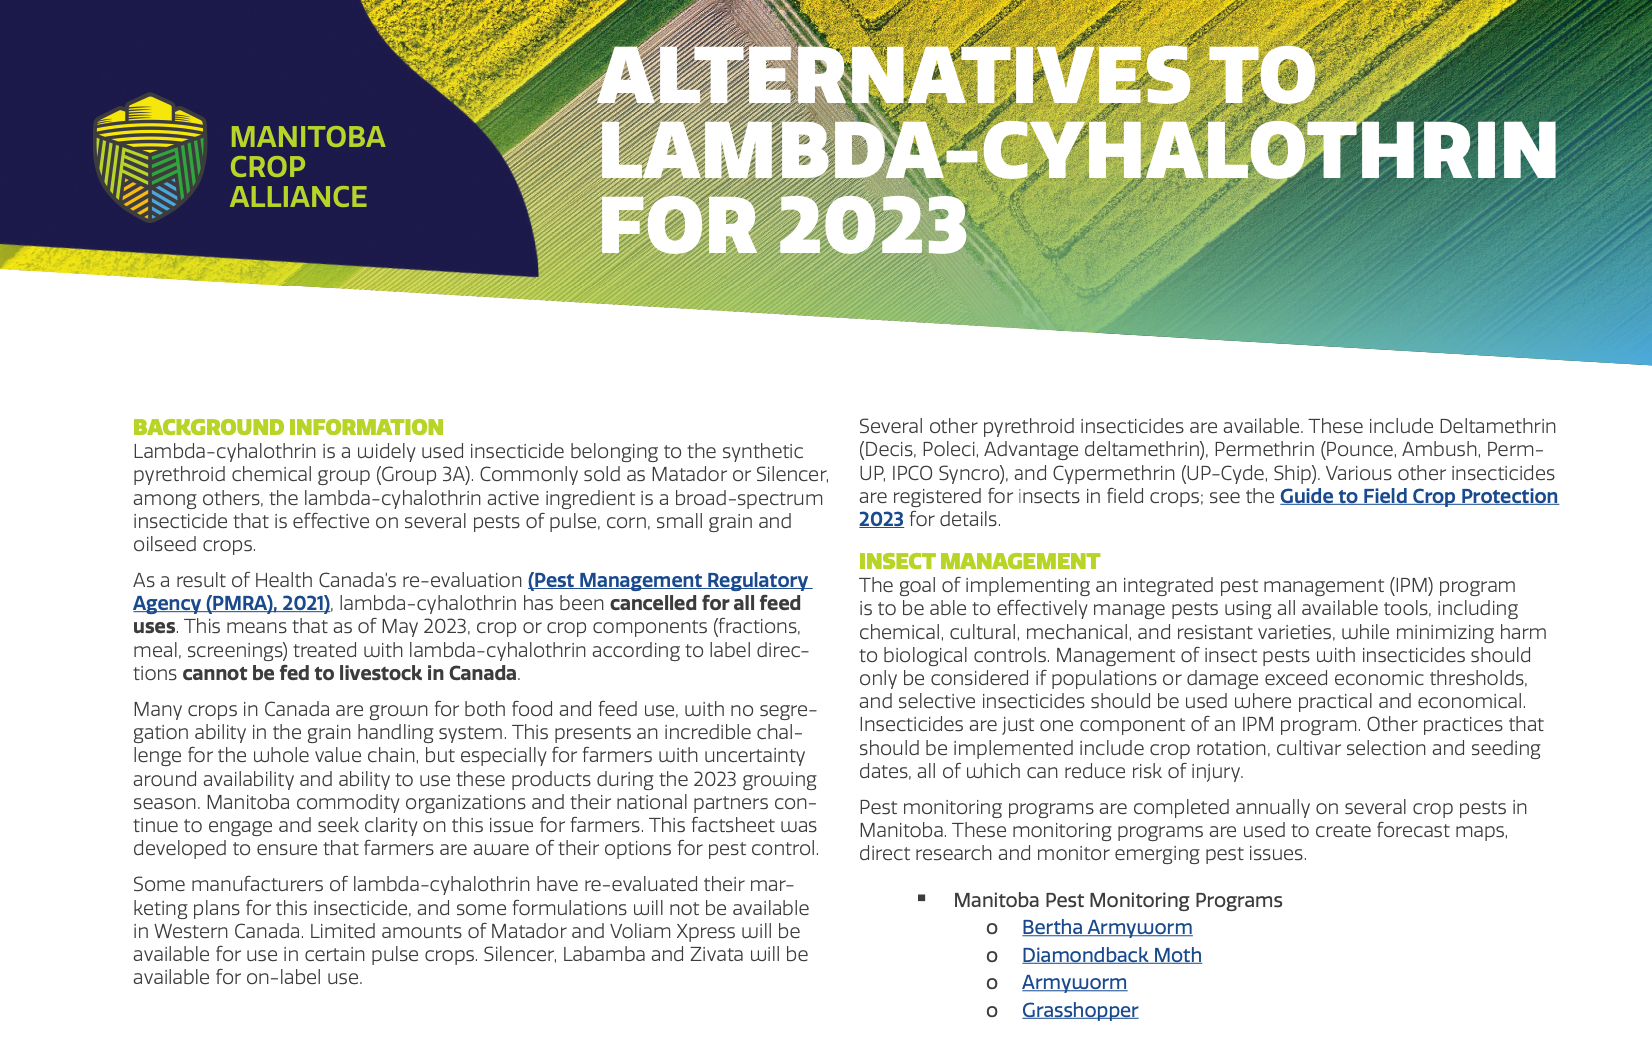 Alternatives to Lambda-Cyhalothrin for 2023